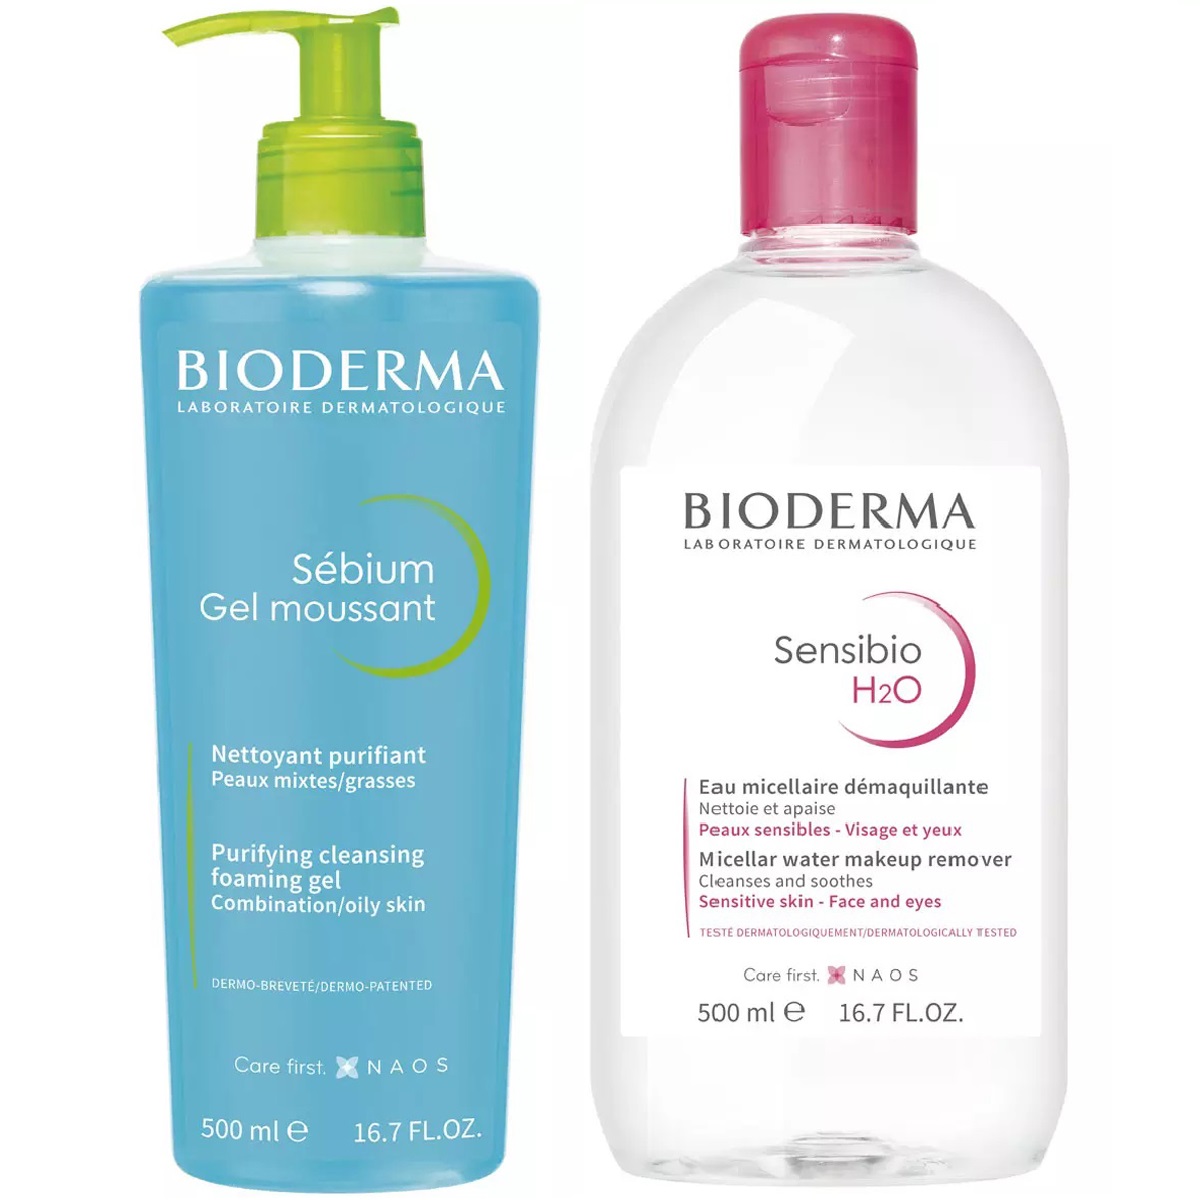 Bioderma Набор для очищения жирной кожи: гель, 500 мл + мицеллярная вода, 500 мл (Bioderma, Sebium)